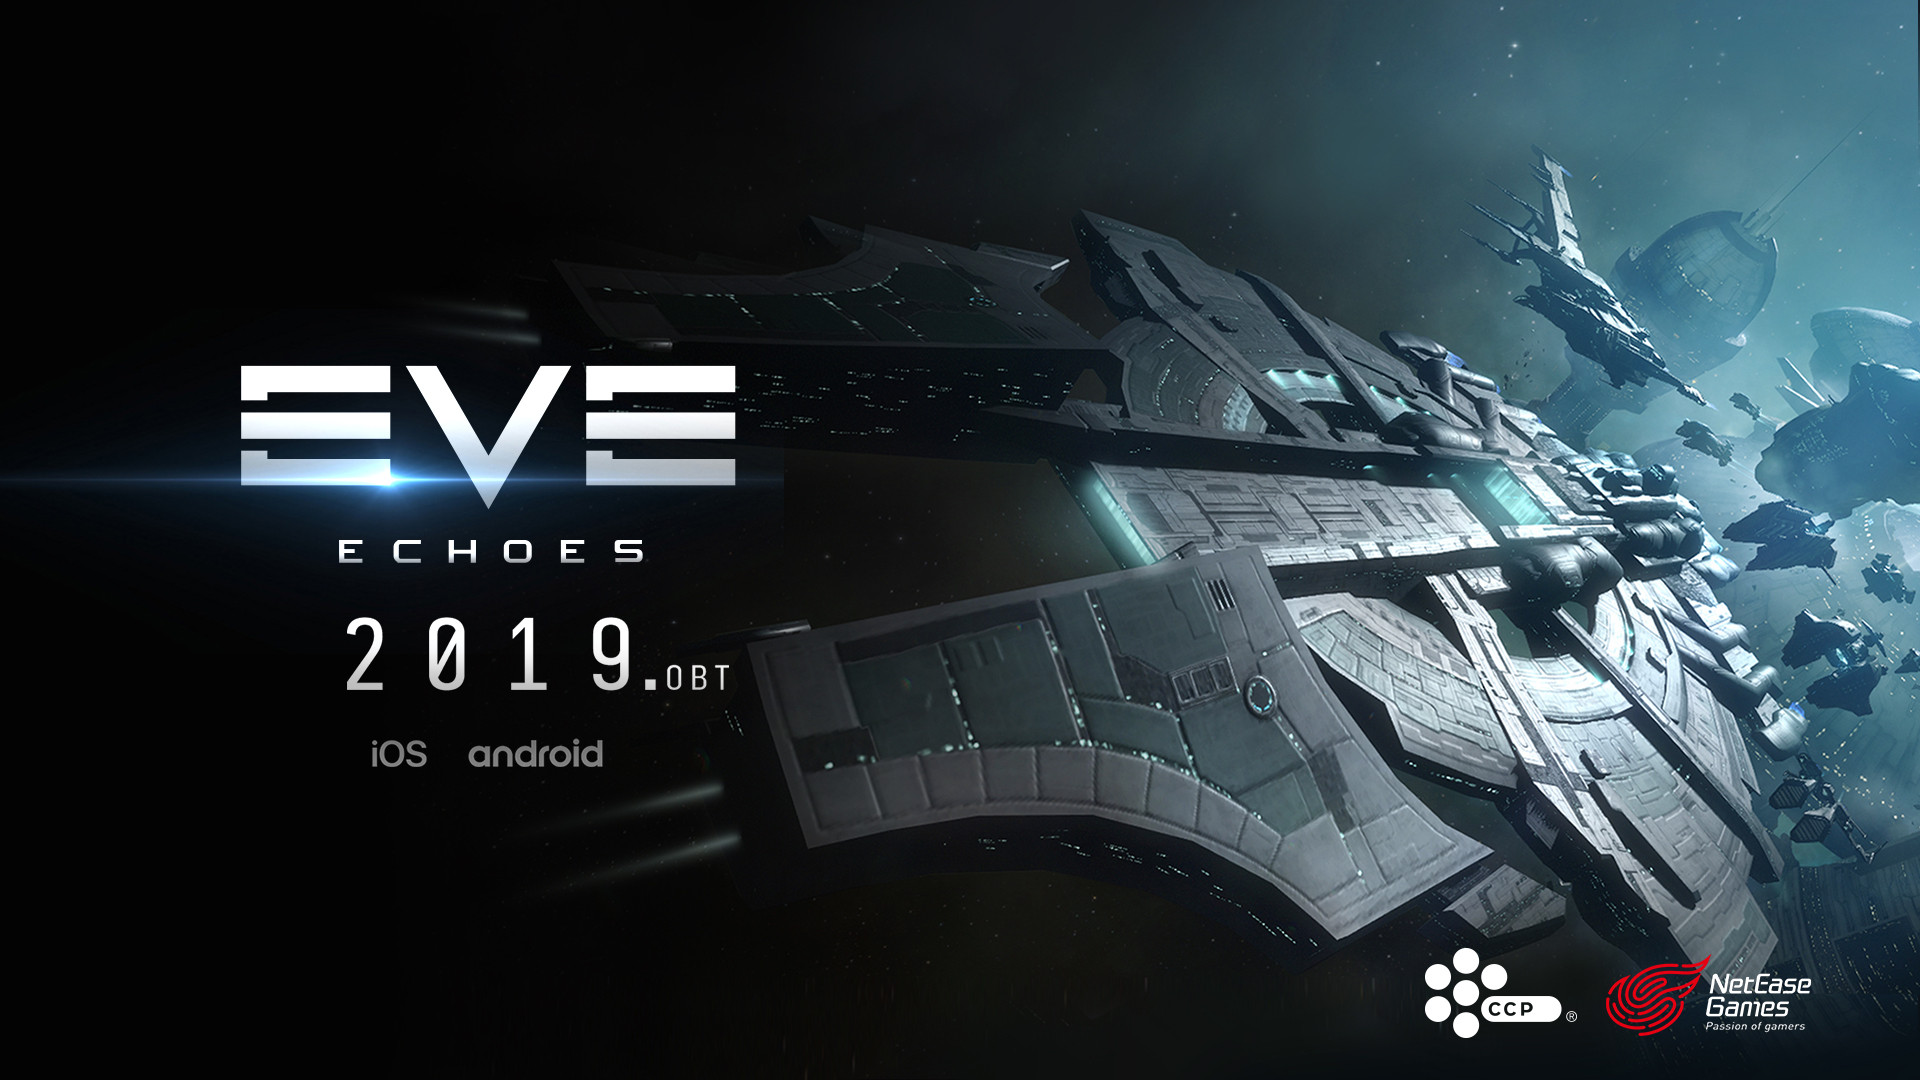 宇宙規模の戦いを再現するmmorpg Eve Online スマホへ Neteaseと共同で Eve Echoes を19年にリリース